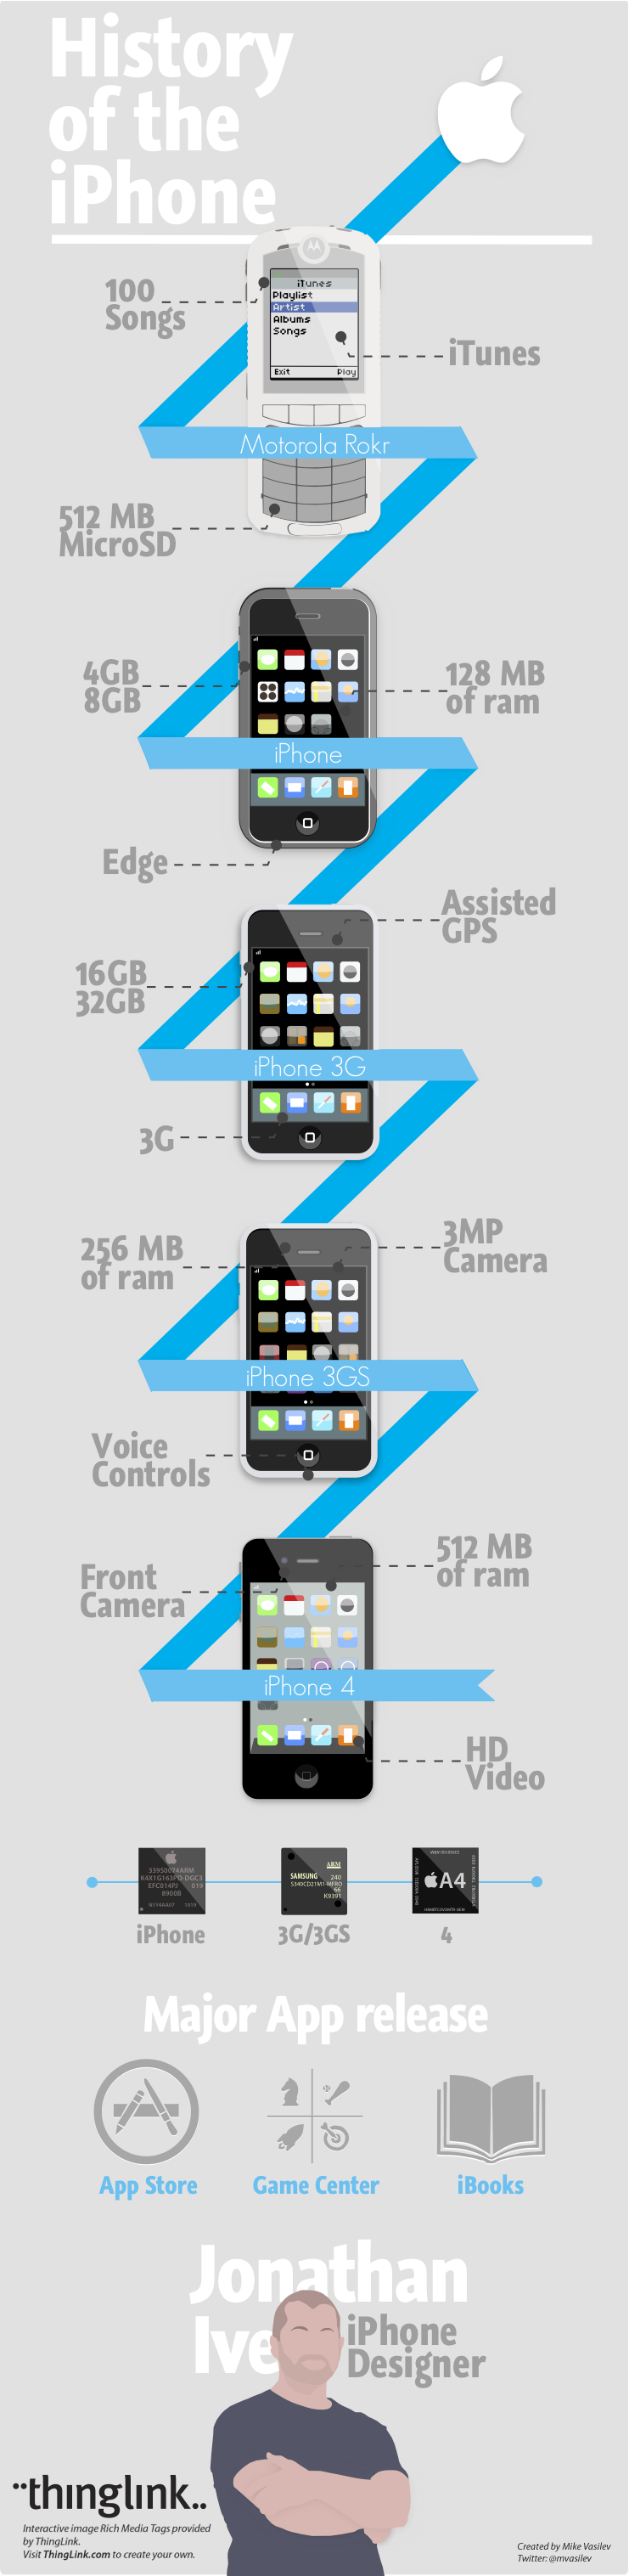 Historia del iPhone en una infografía